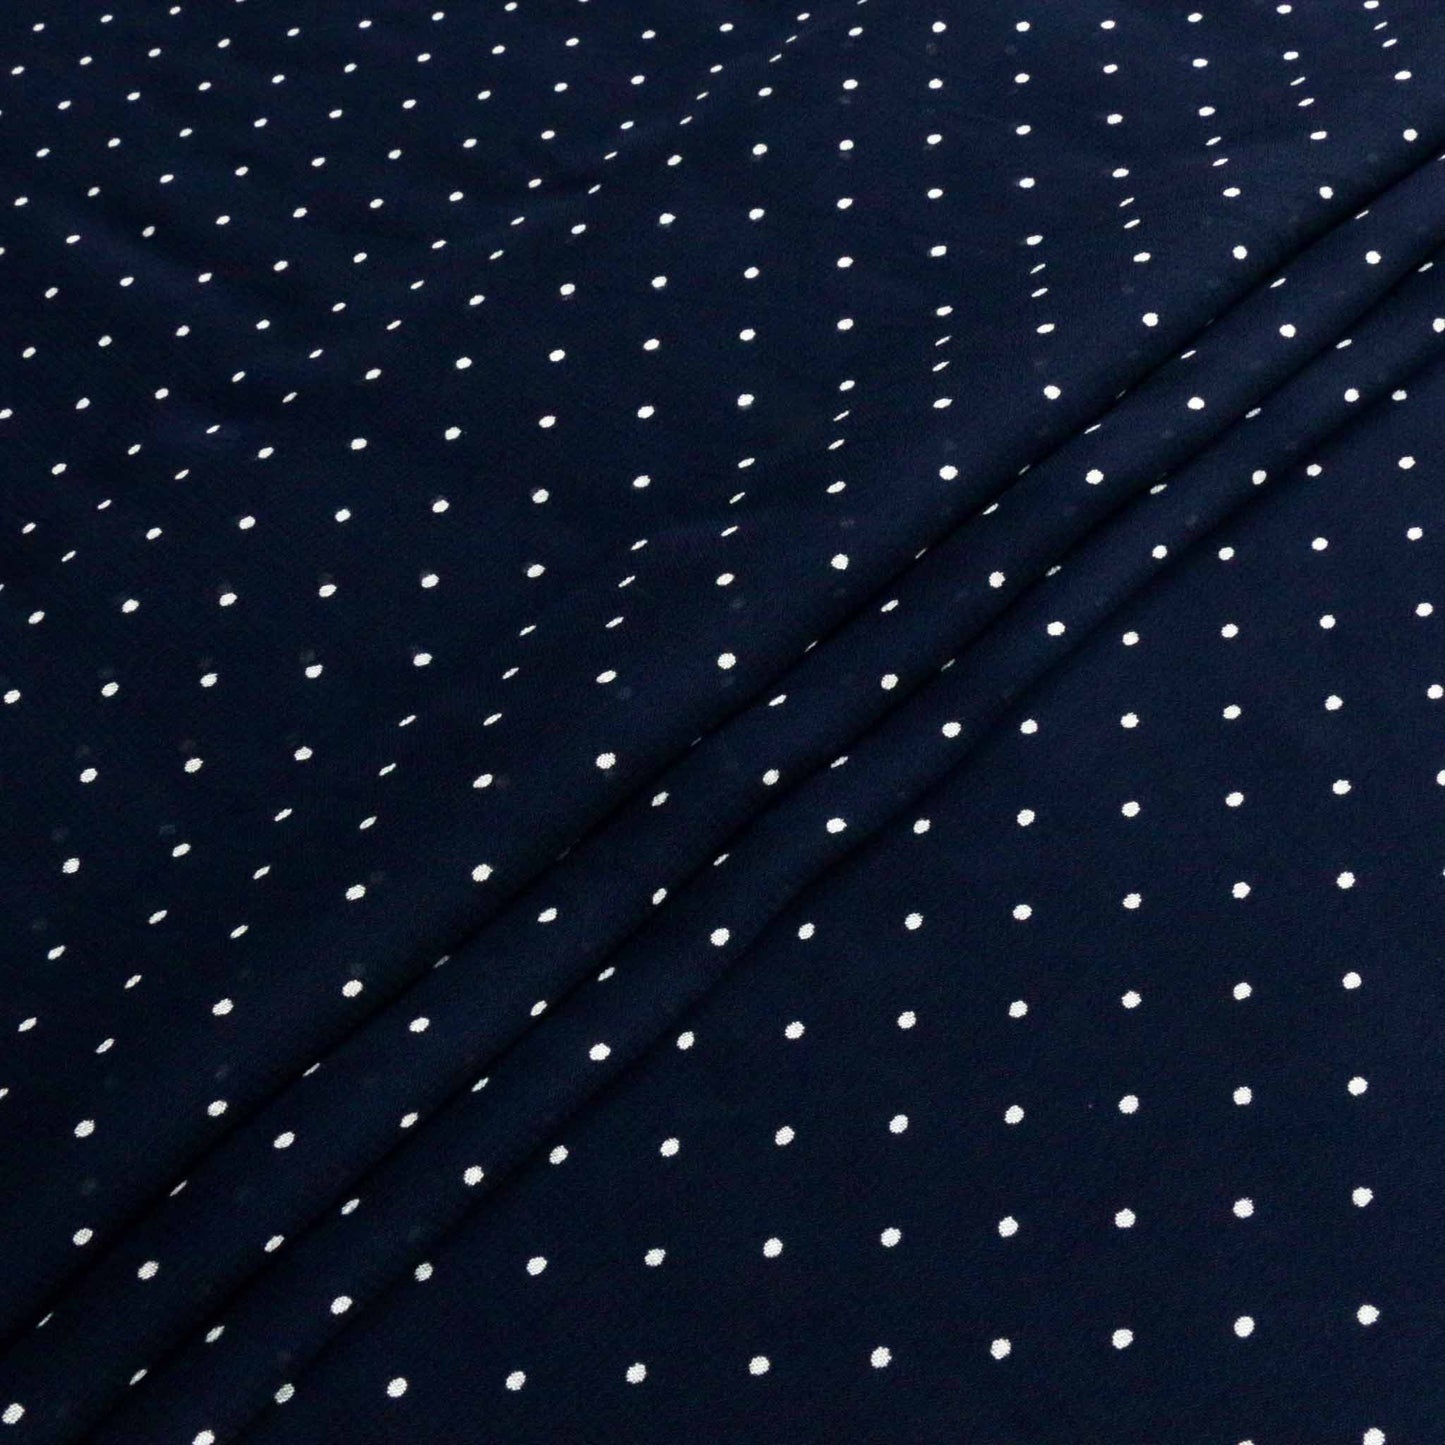 white polka dots on blue viscose chiffon dressmaking fabric